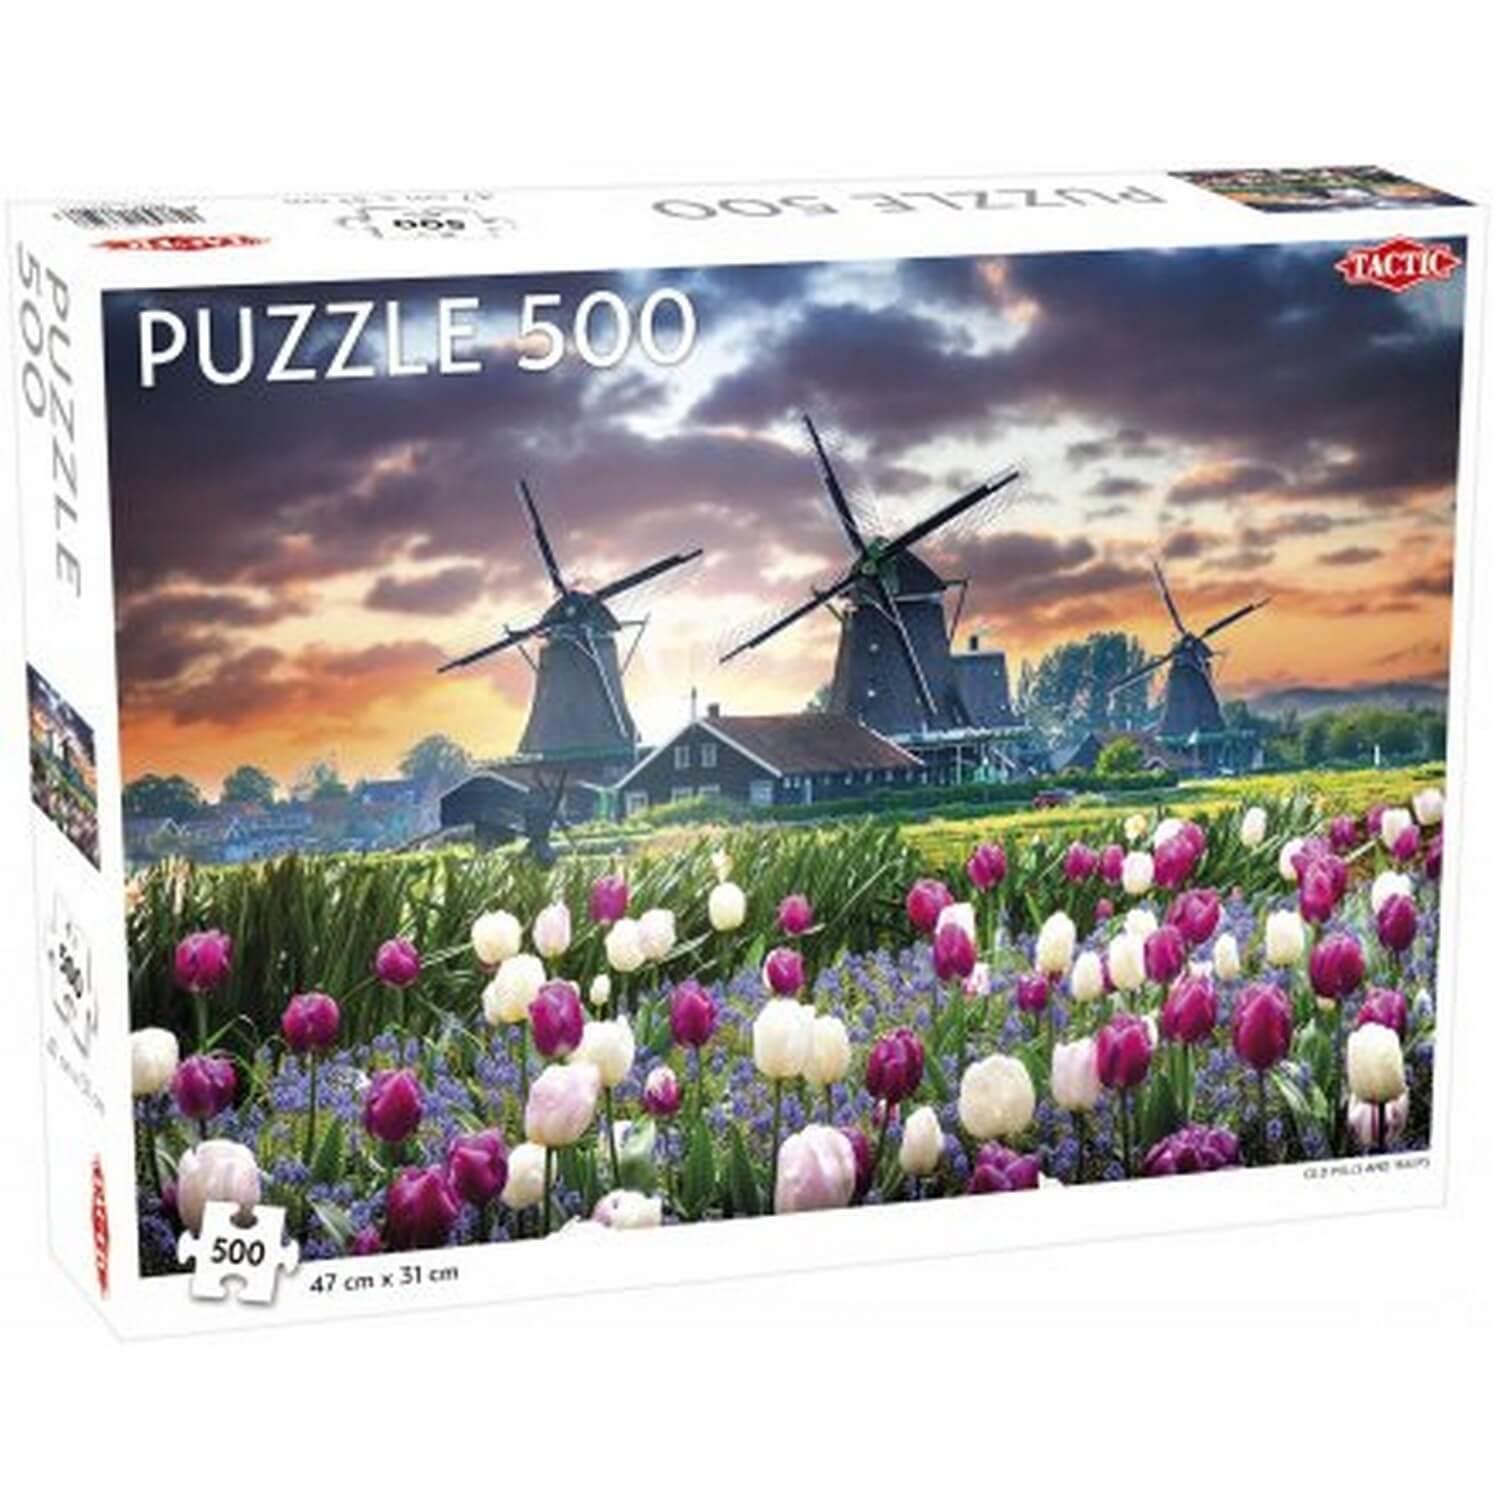 Puzzle 500 pièces : Vieux moulins et tulipes